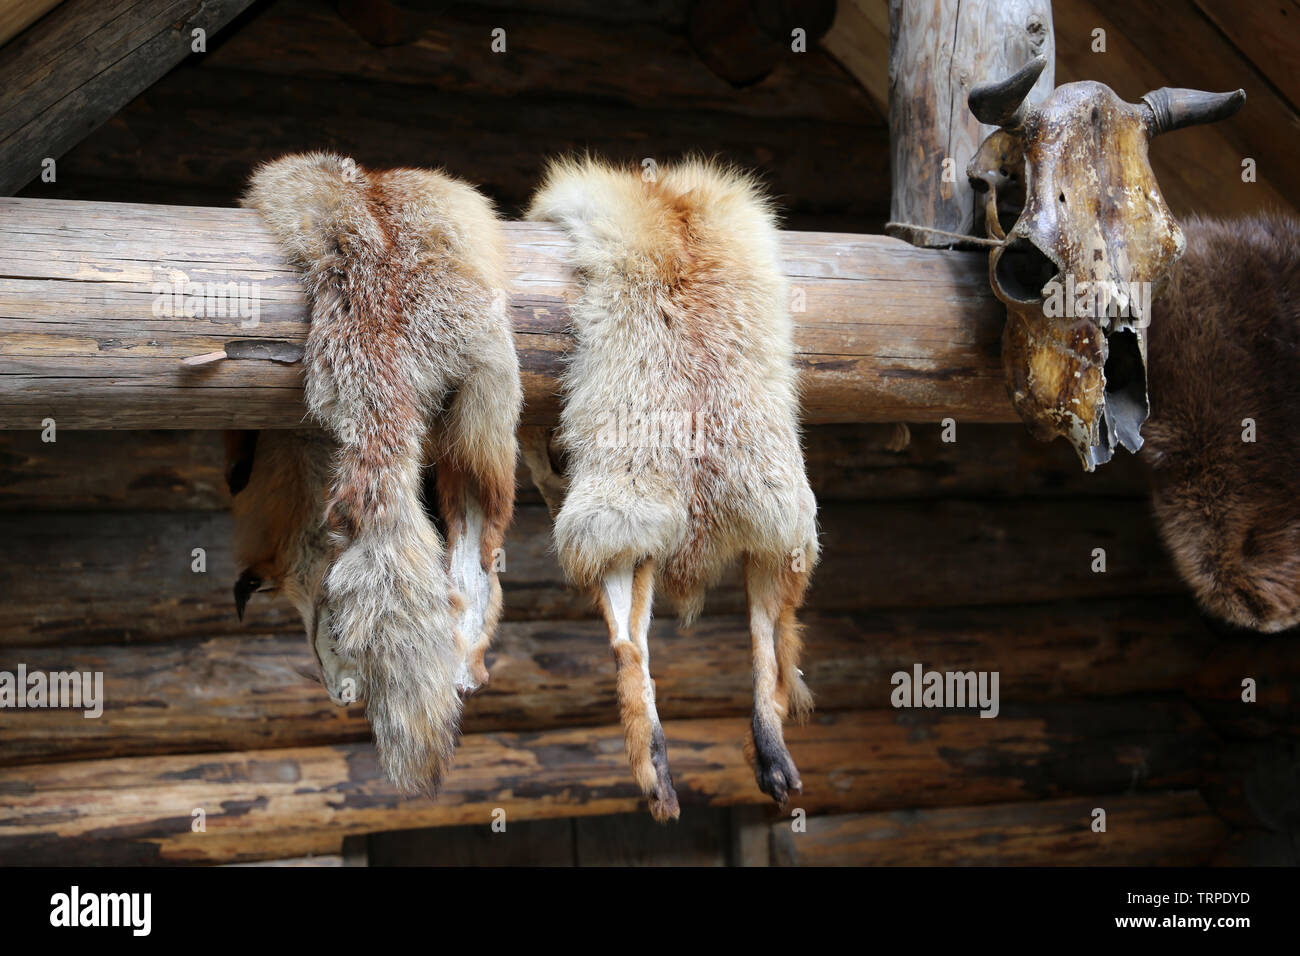 Les peaux de renard sécher sur le mur d'un lodge en bois, proies de Hunter. Concept de la chasse aux animaux à fourrure Banque D'Images